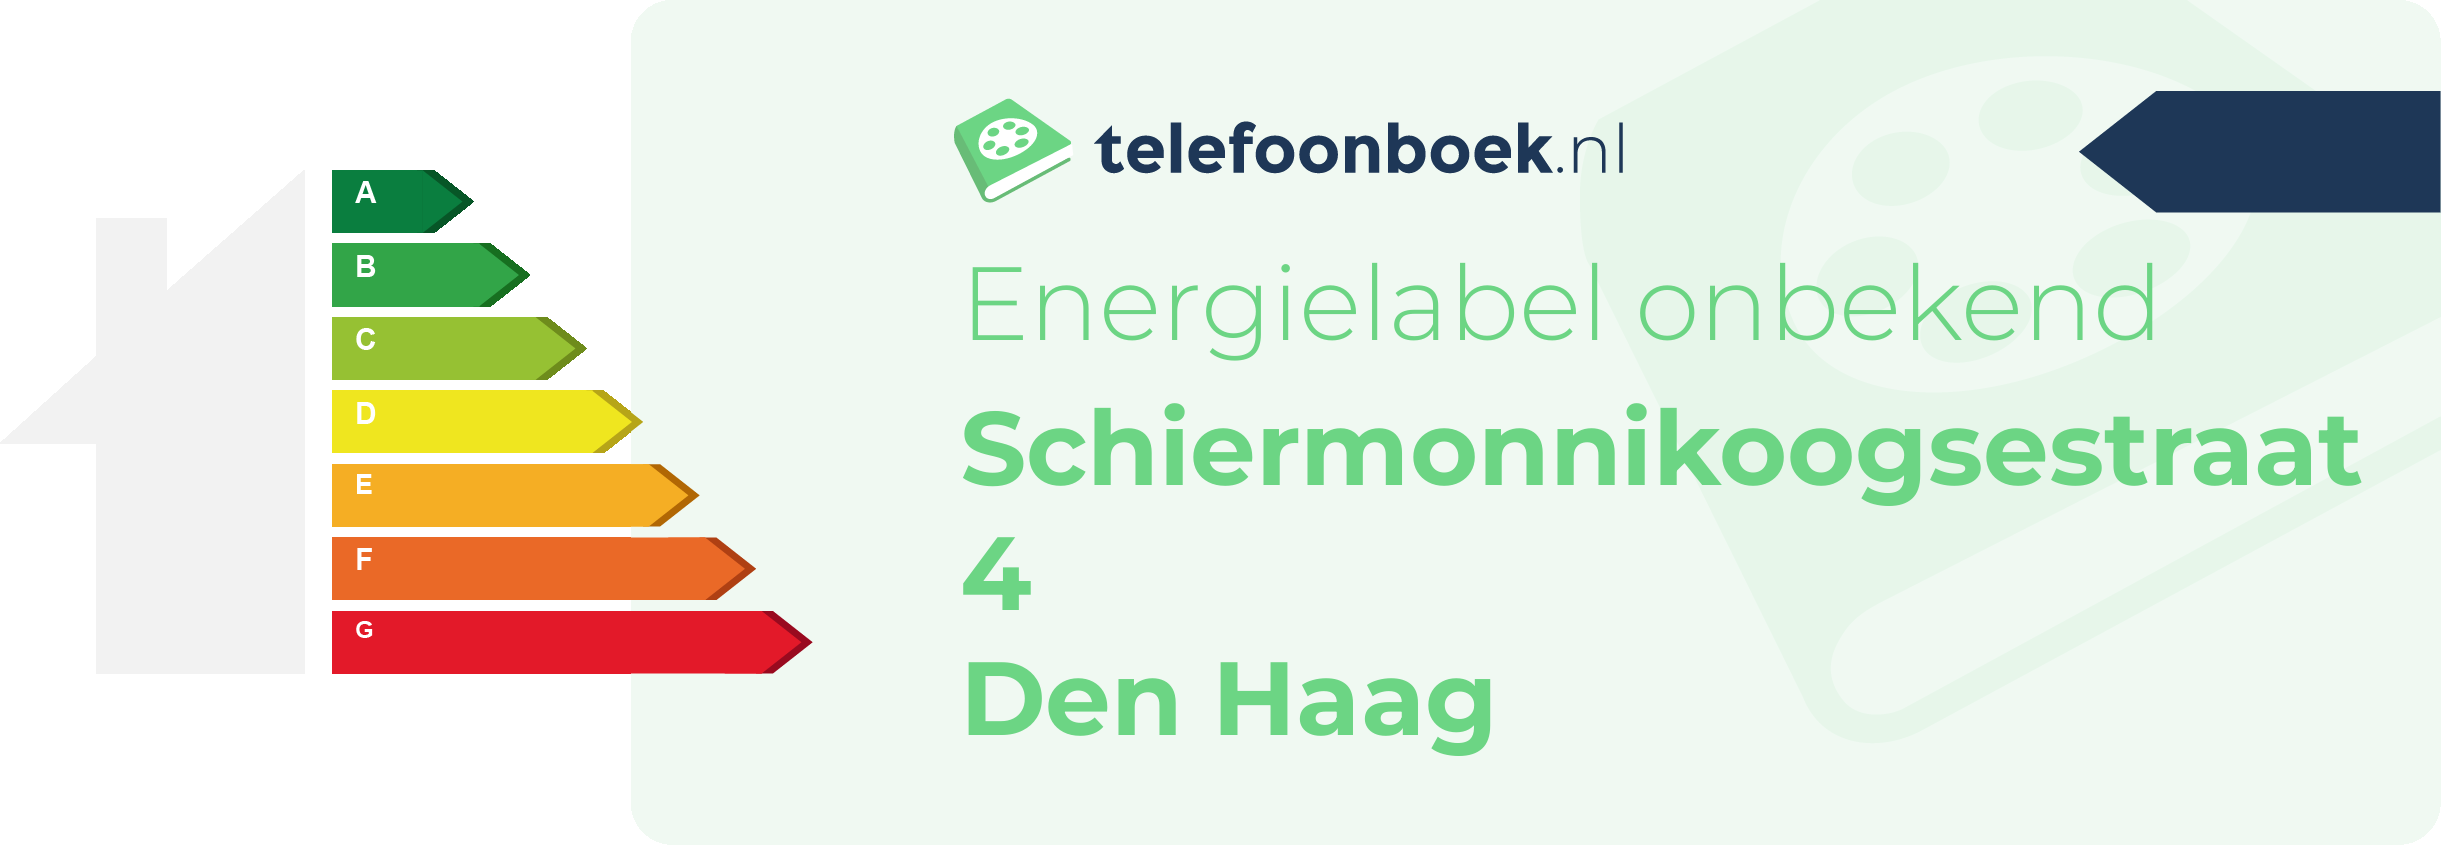 Energielabel Schiermonnikoogsestraat 4 Den Haag